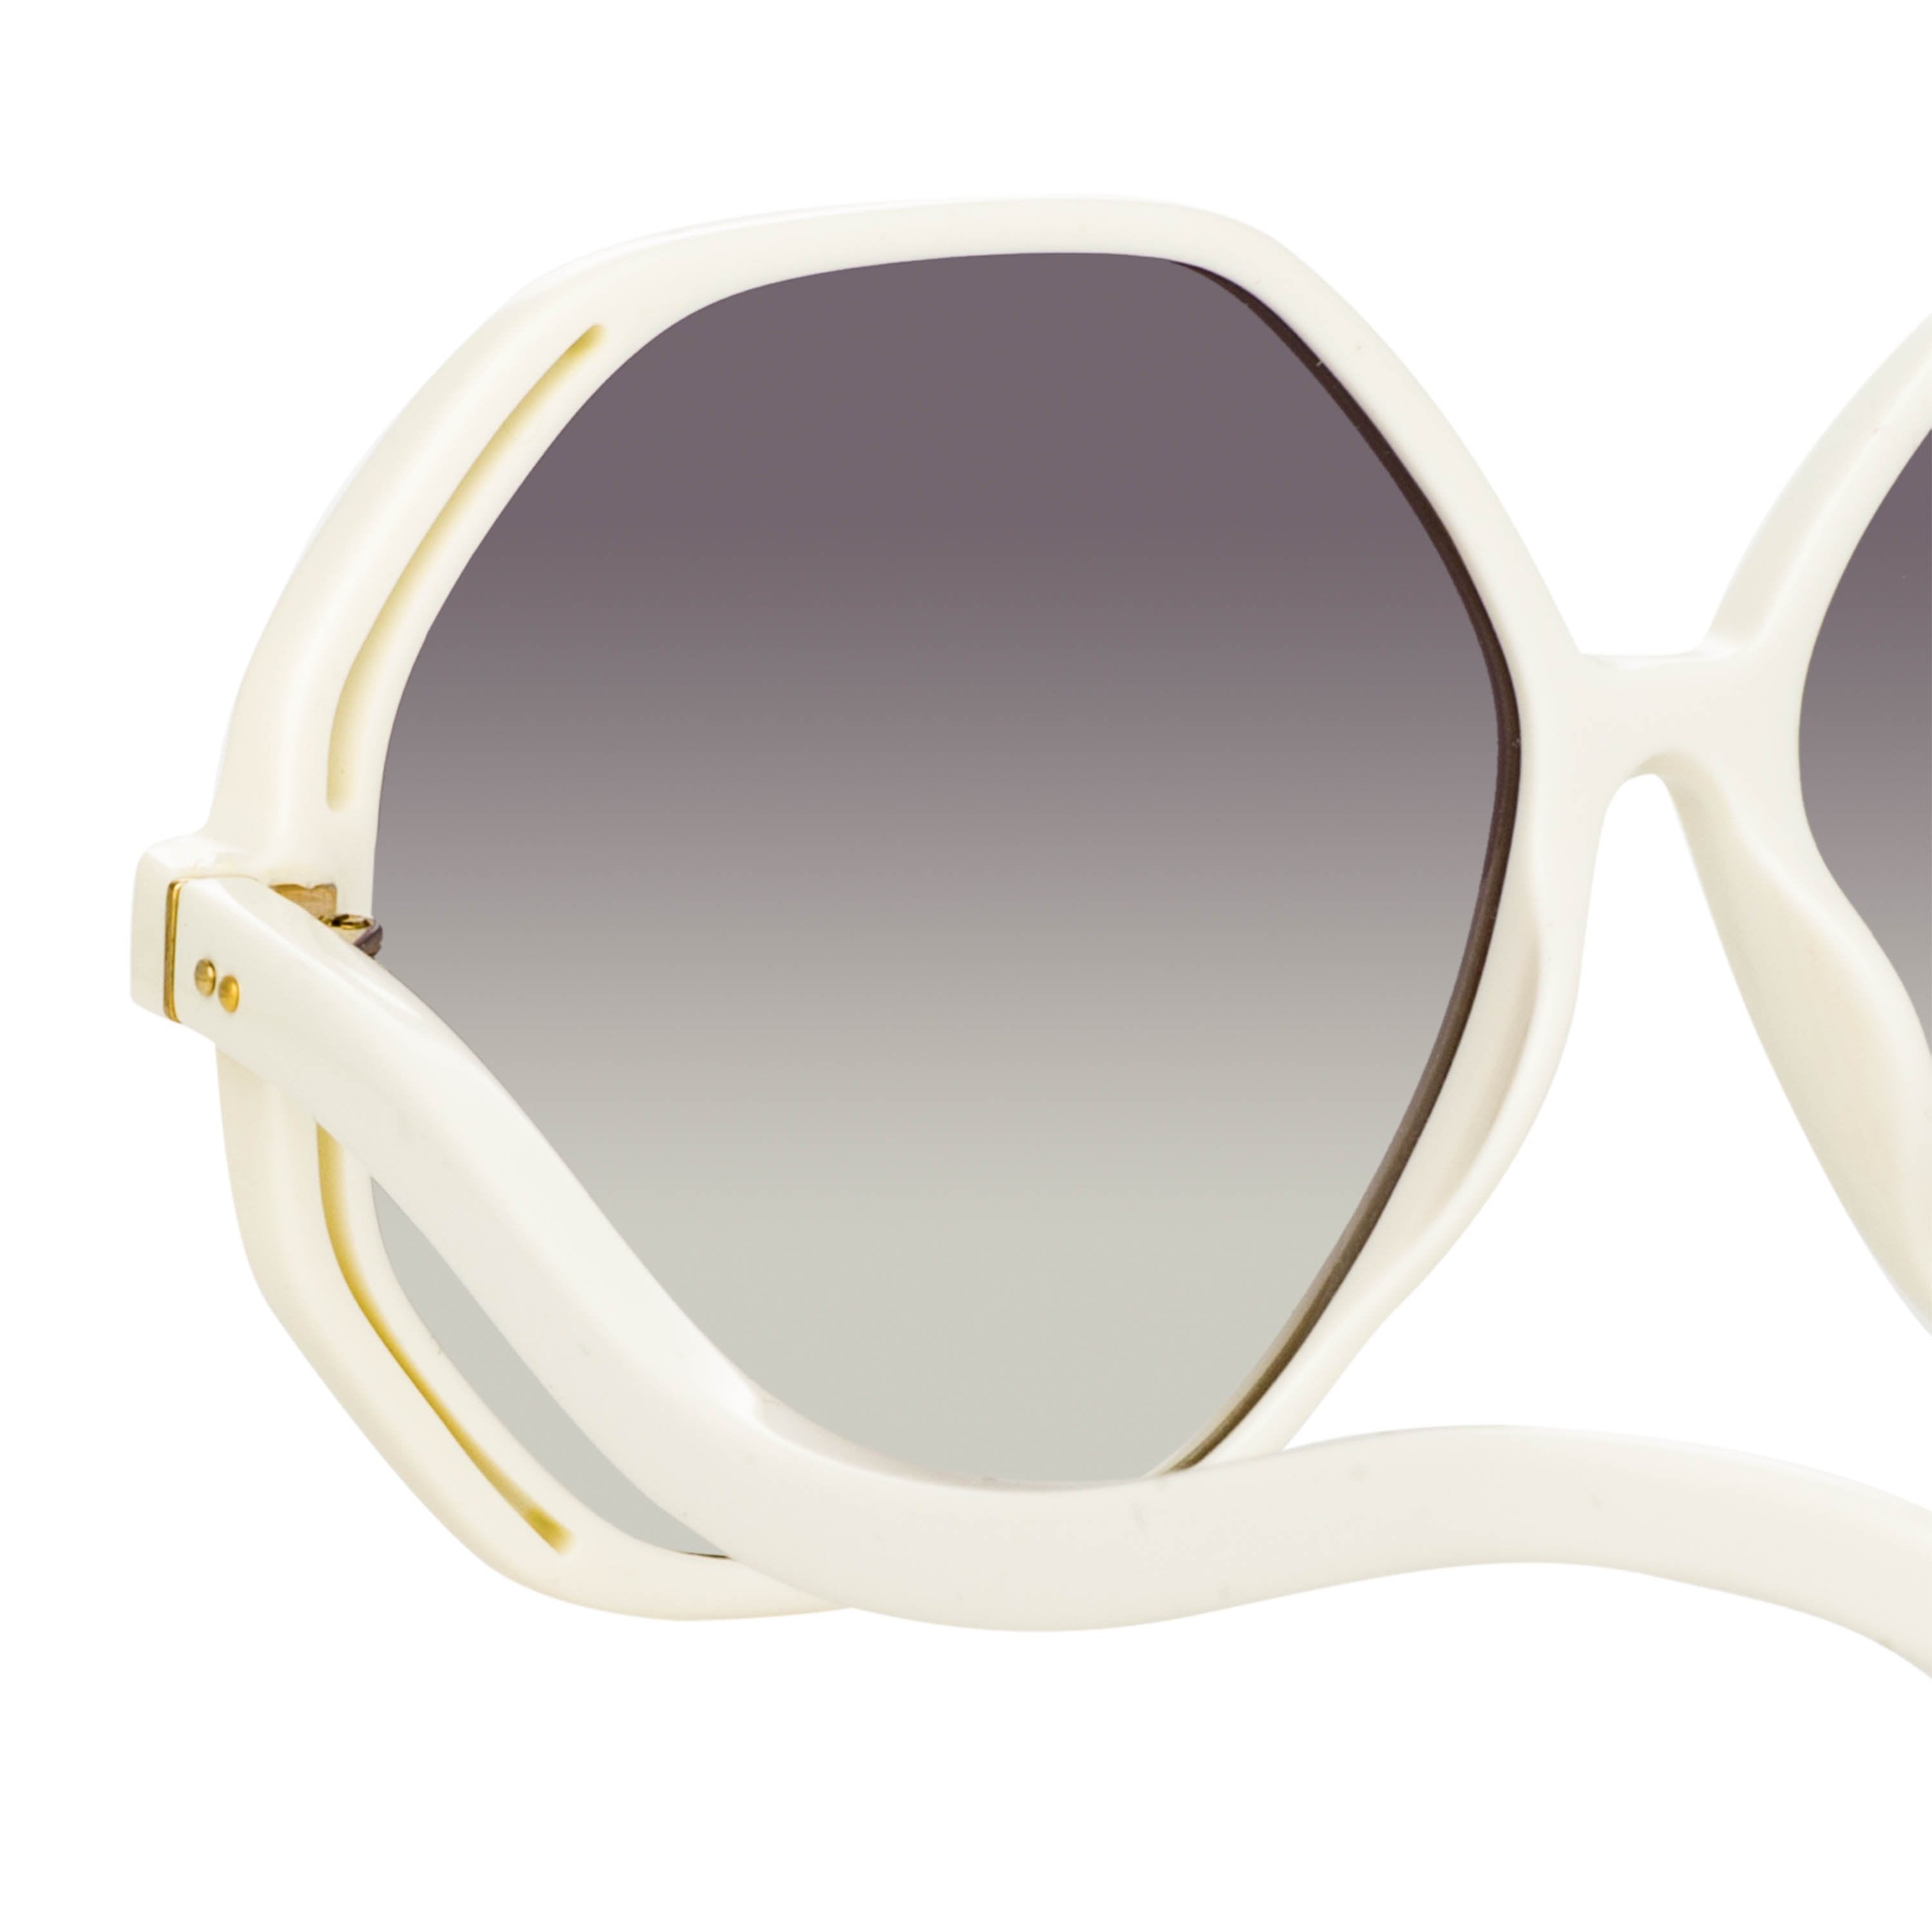 Color_LFL1058C3SUN - Una Oversized Sunglasses in White